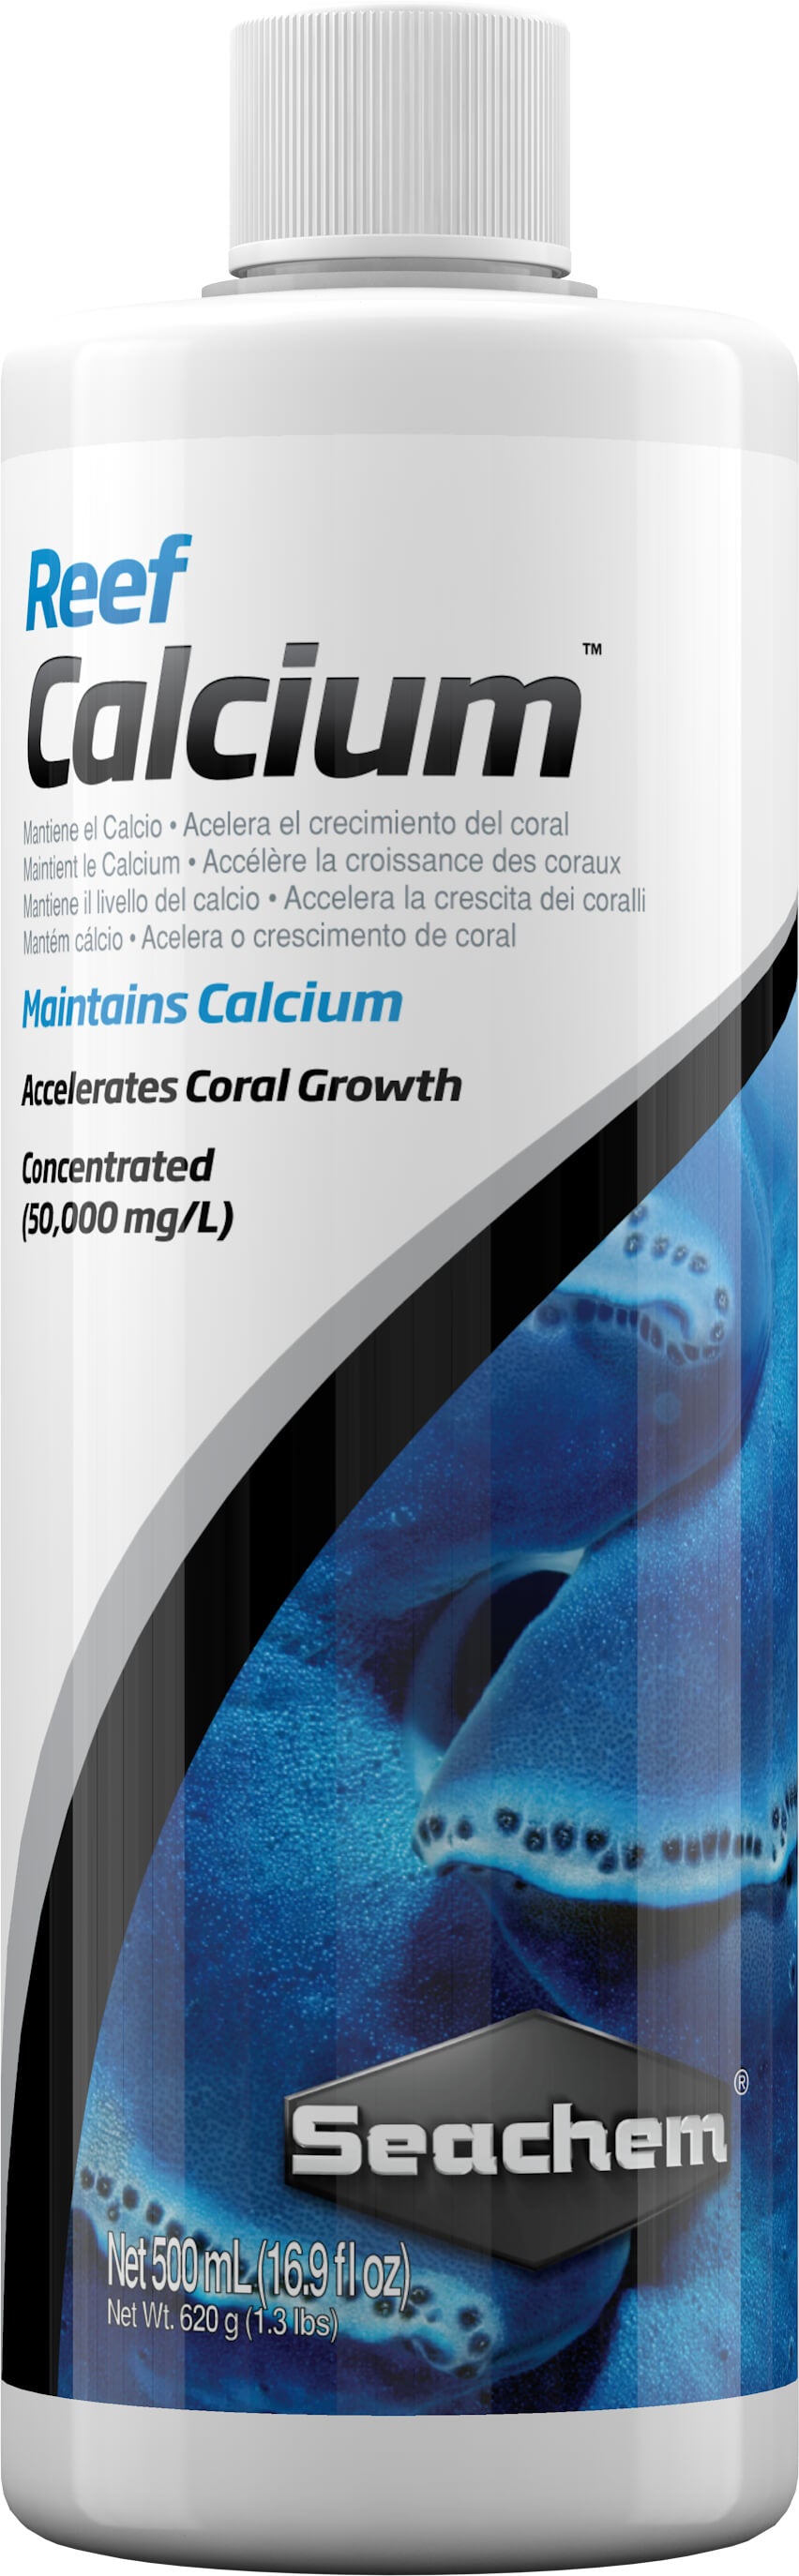 Reef Calcium™ 500 ml.